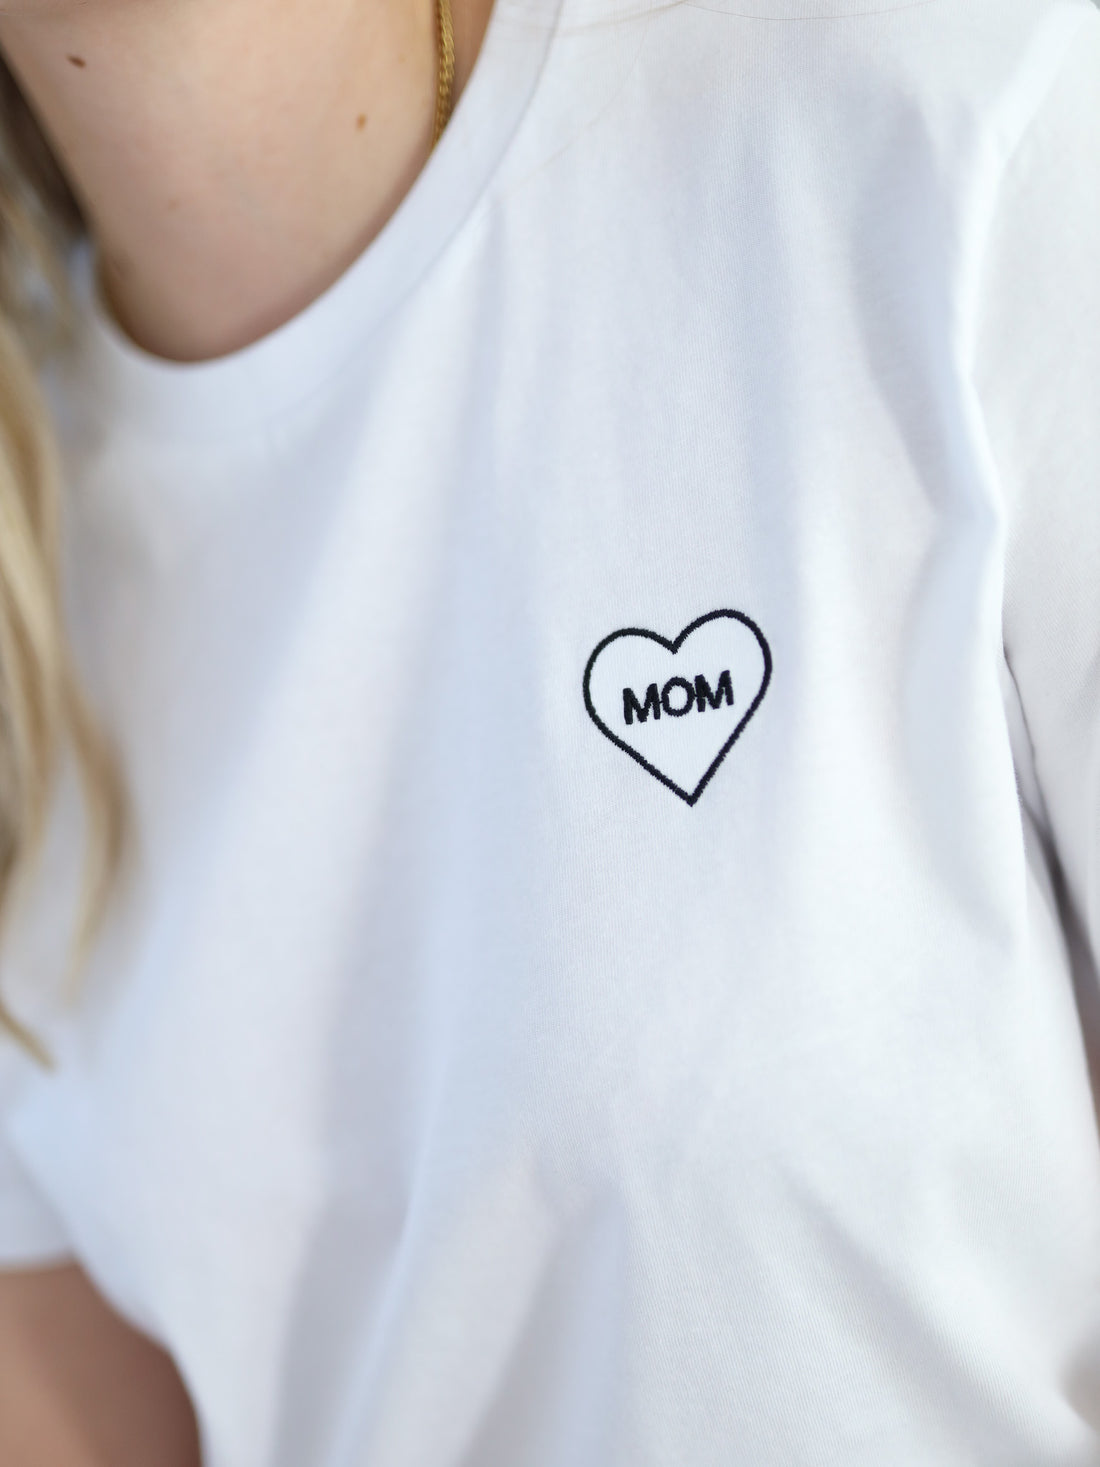 MOM Heart Shirt weiß/schwarz - FAMVIBES 